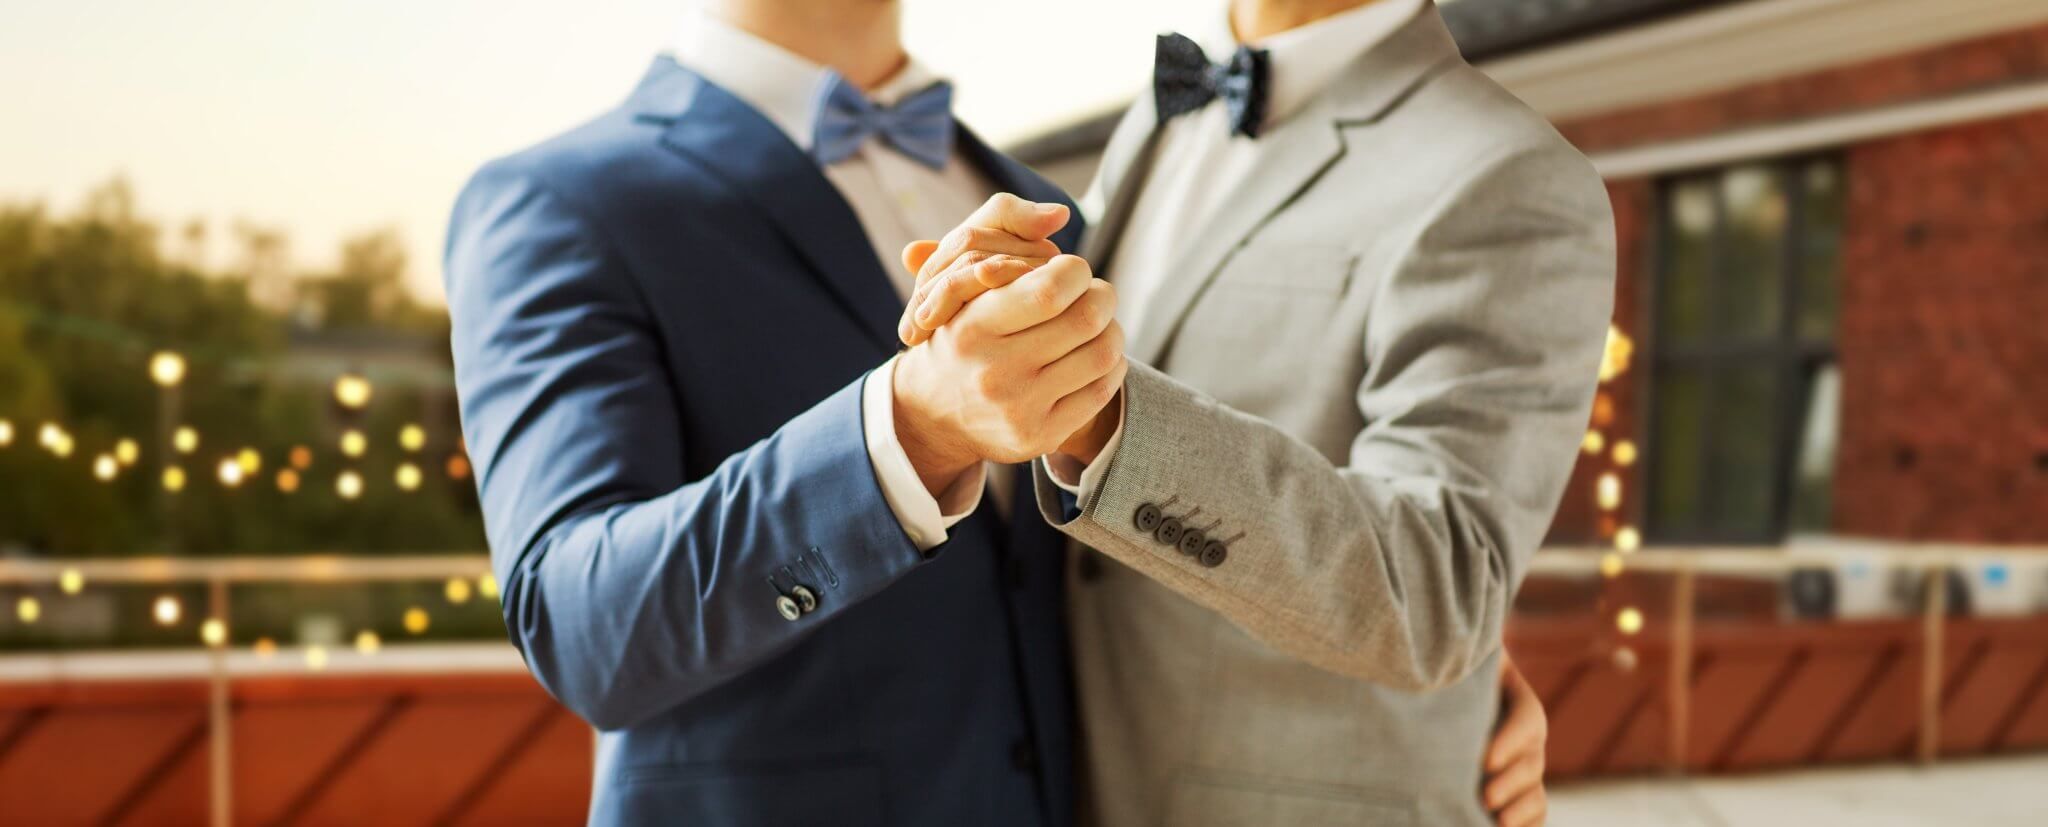 Tag der Freude in Griechenland: Die “Ehe für alle” wird legalisiert